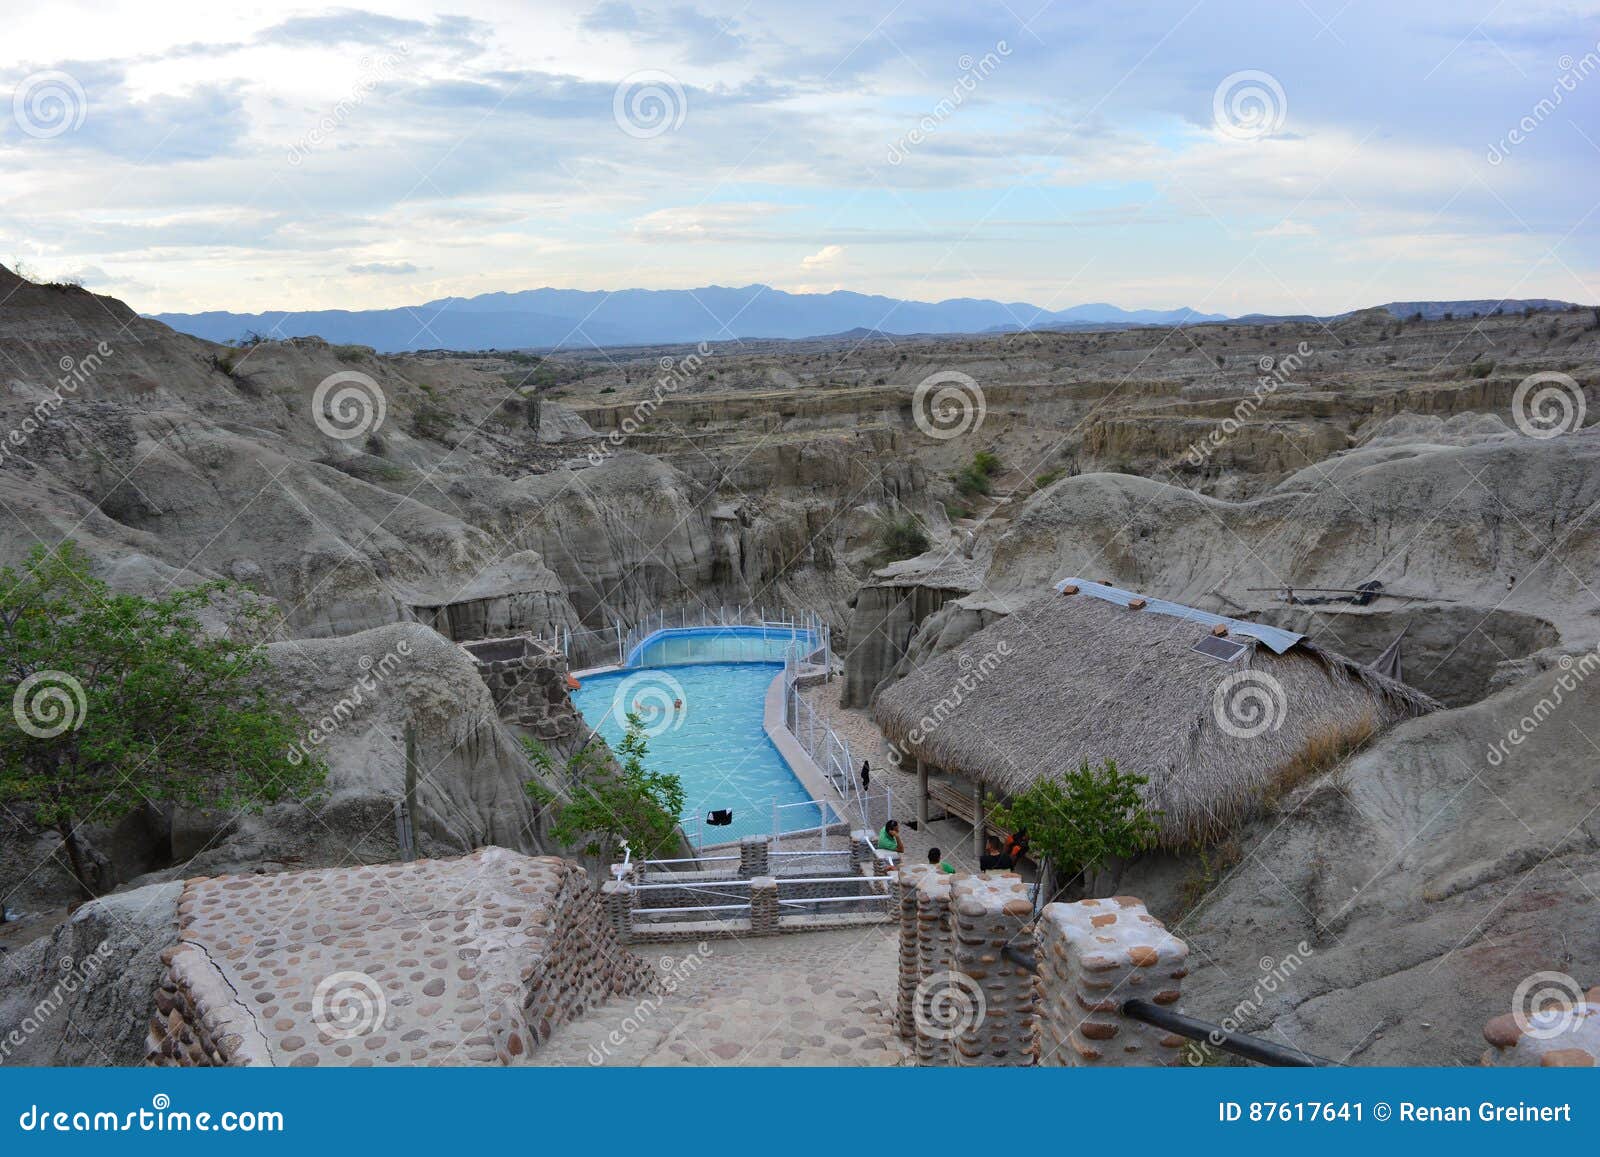 pool in the tatacoa desert, in neiva, colombia